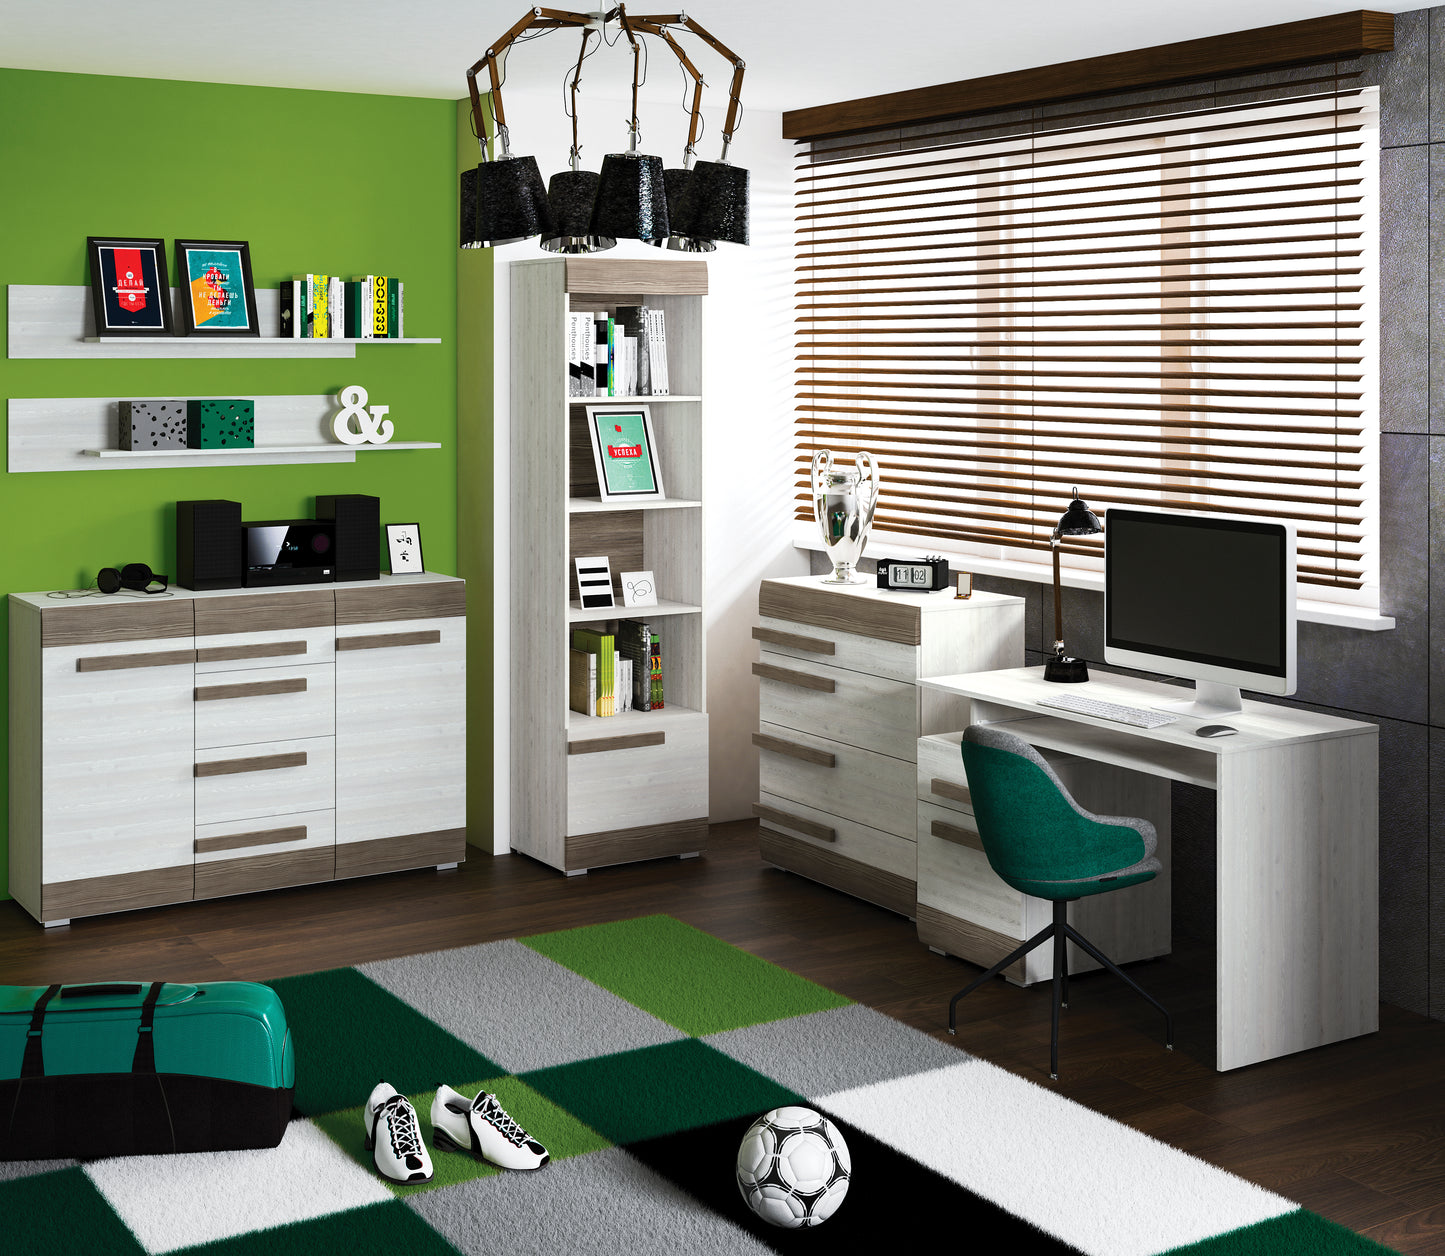 Zdjęcie przedstawiające nowoczesny pokój młodzieżowy z meblami z kolekcji Blanka. Na zdjęciu widoczne biurko komputerowe, komoda z czterema szufladami, regał na książki, komoda z dwiema szafkami oraz dwie półki wiszące na ścianę. 